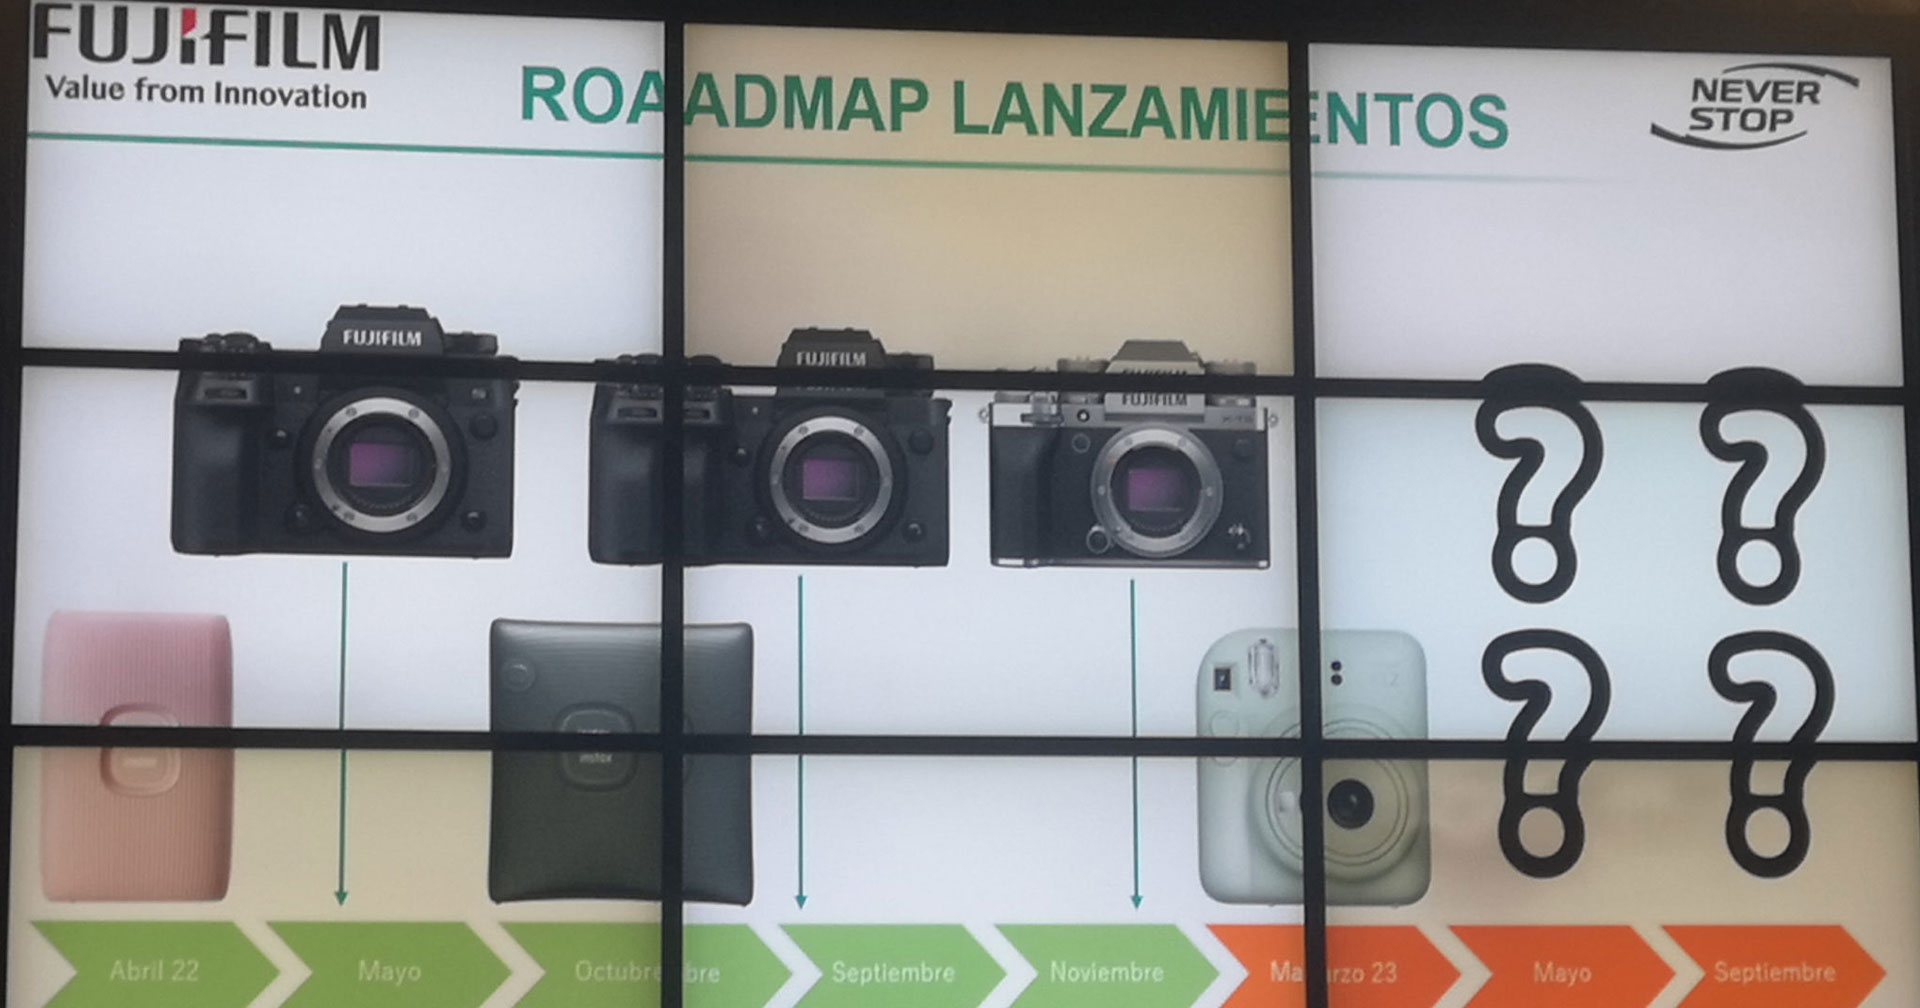 FUJIFILM เตรียมเปิดตัวกล้องใหม่ถึง 4 รุ่น ในปี 2023